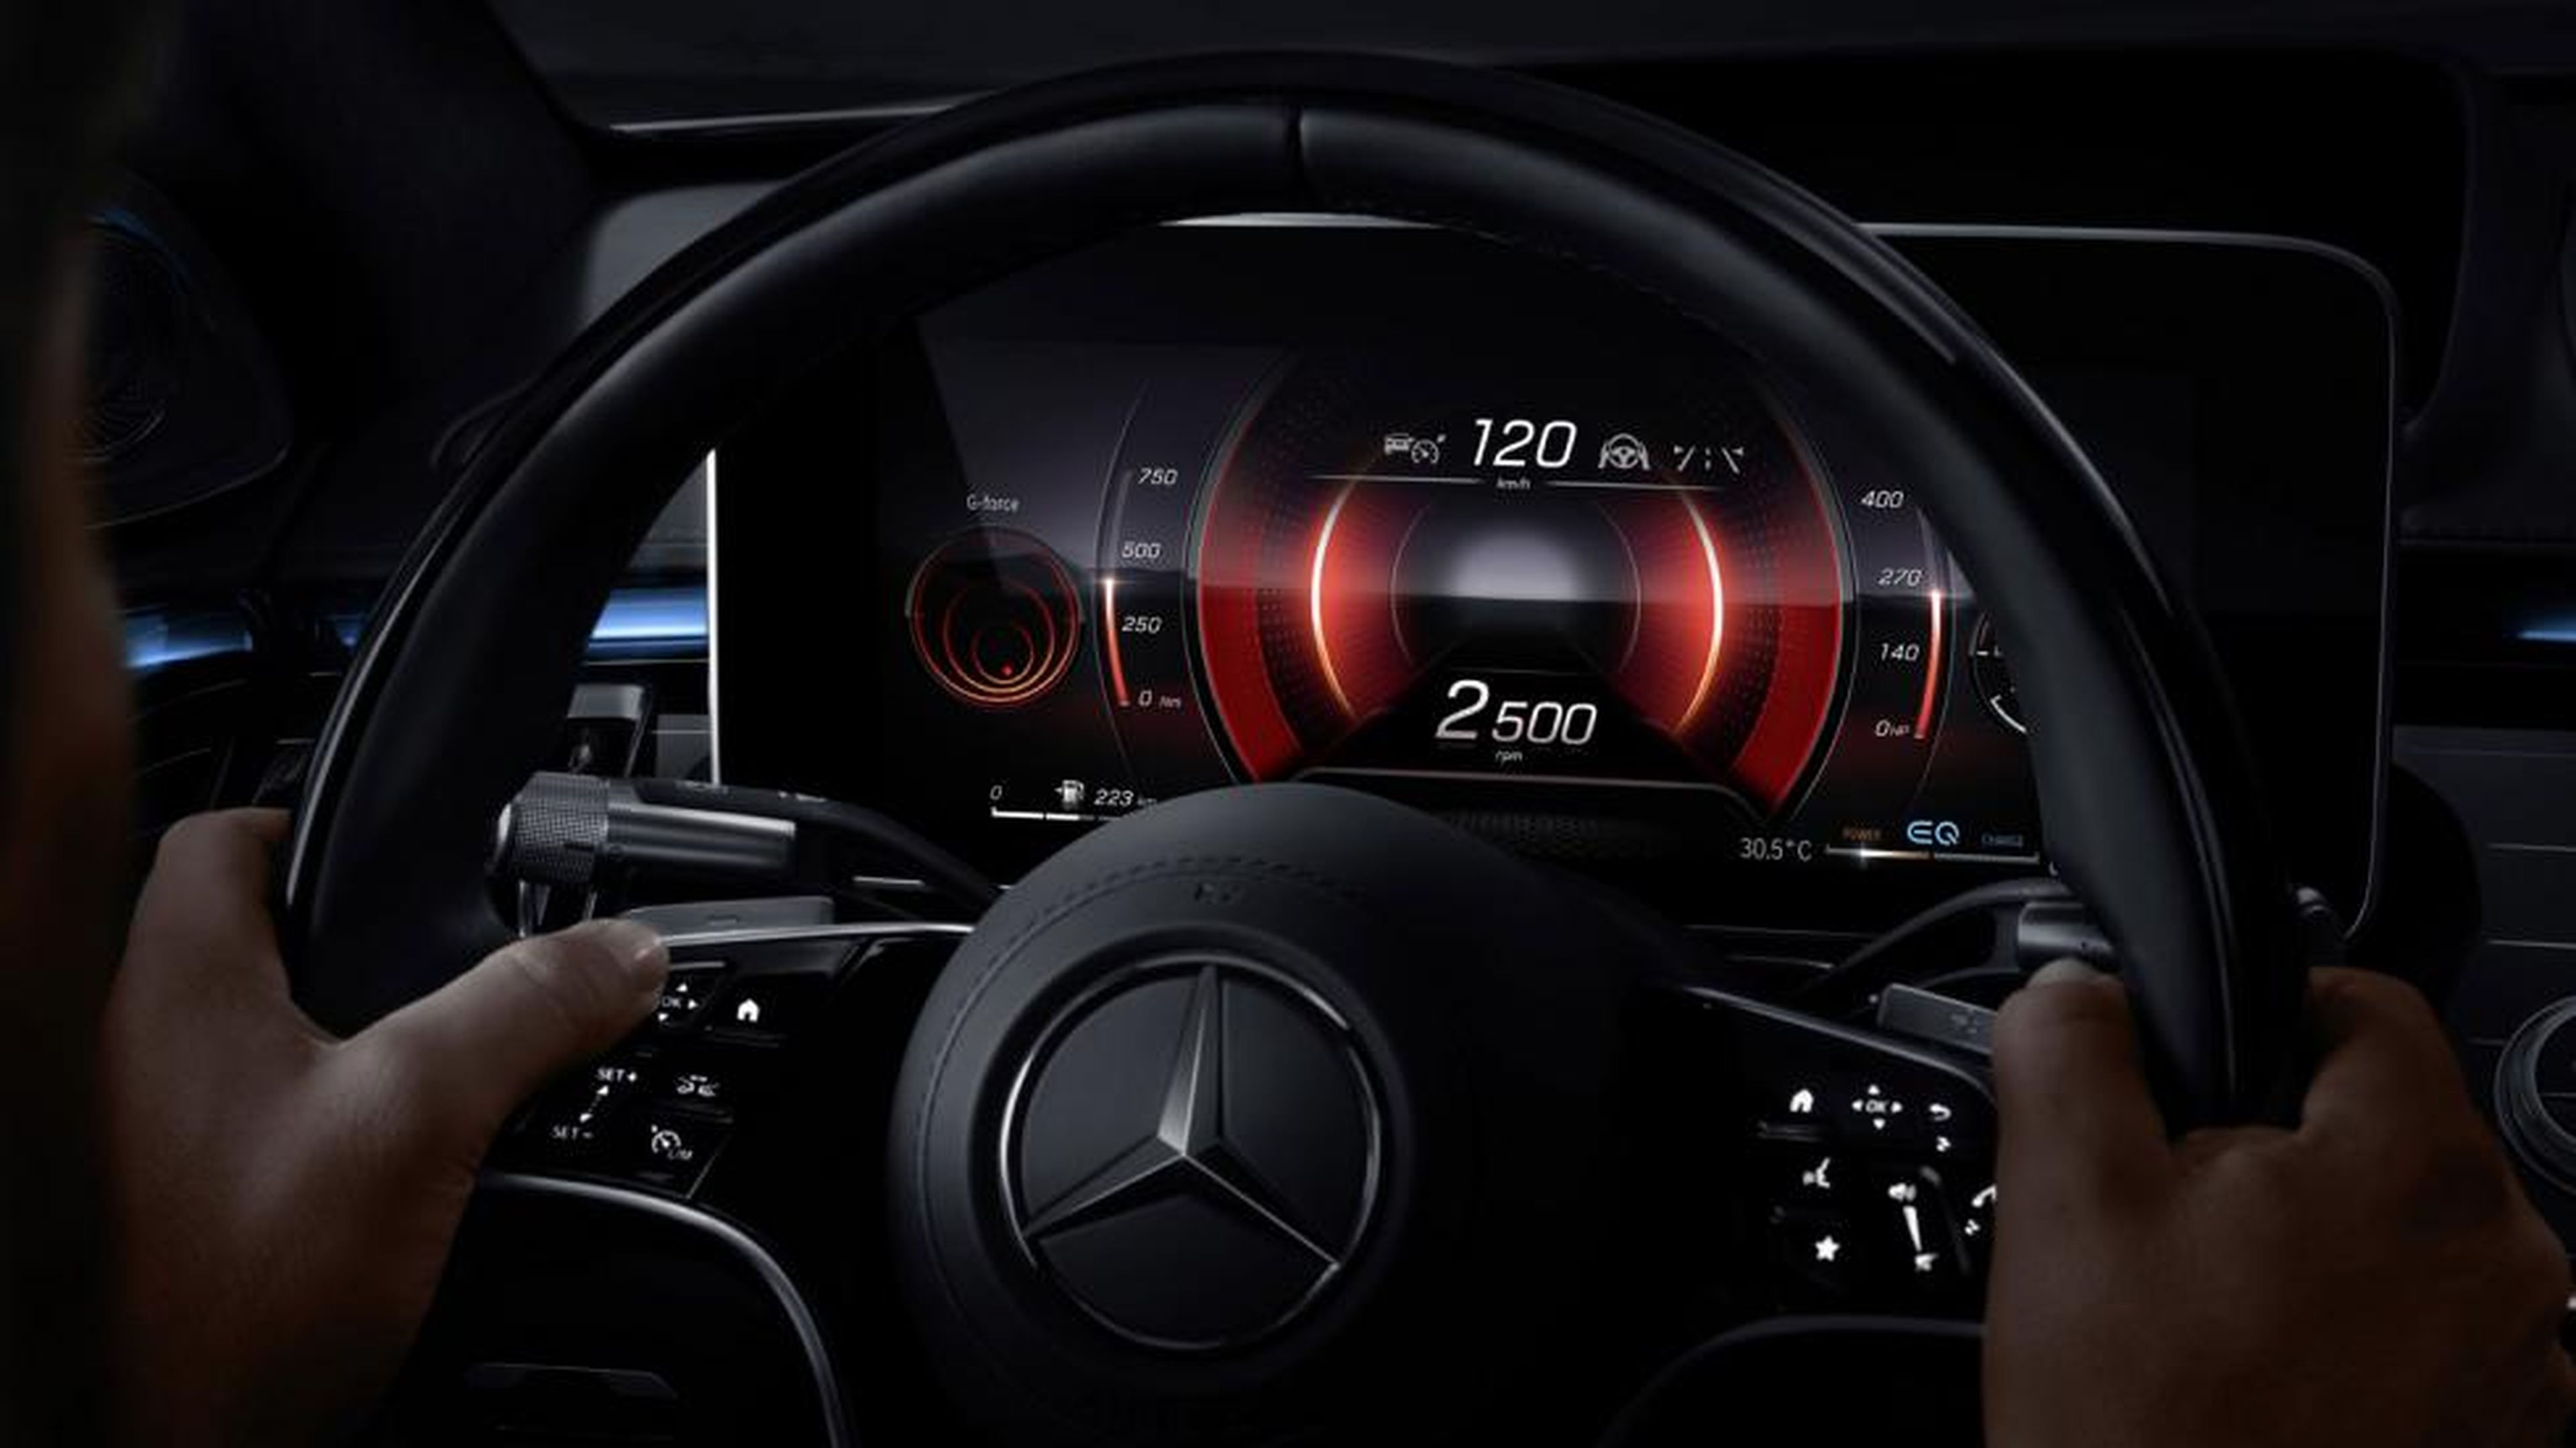 Galería: pantalla MBUX nuevo Mercedes Clase S